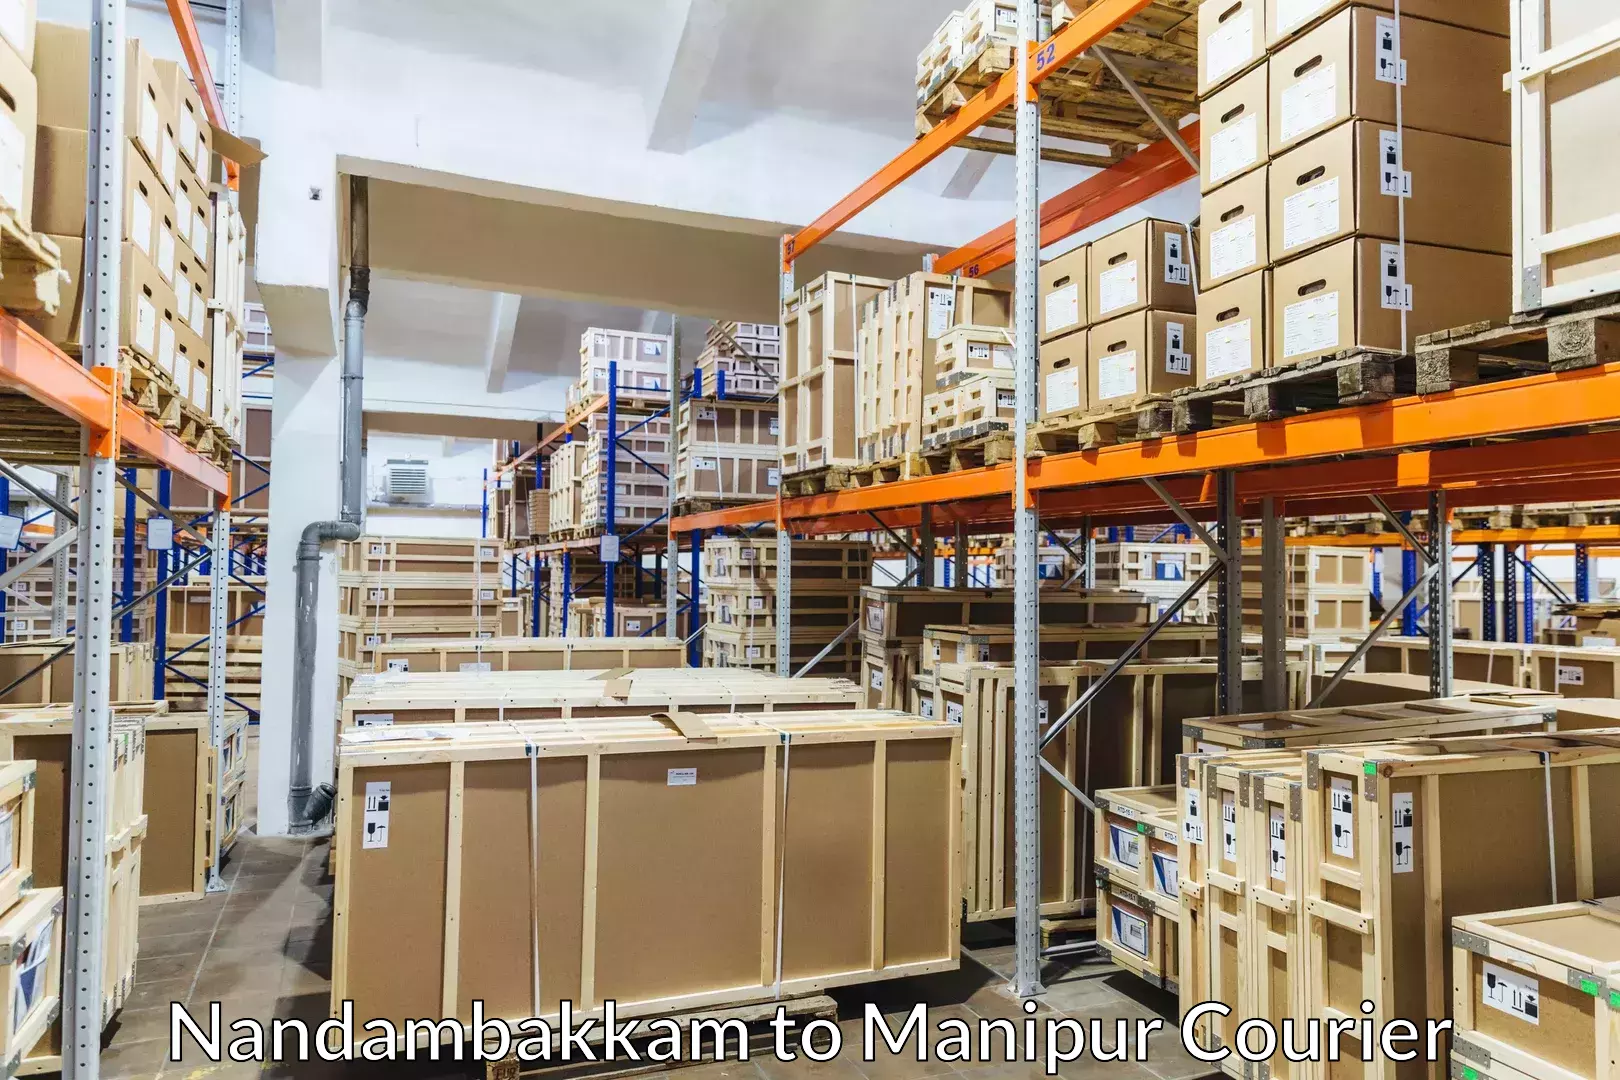 Corporate baggage transport Nandambakkam to Manipur